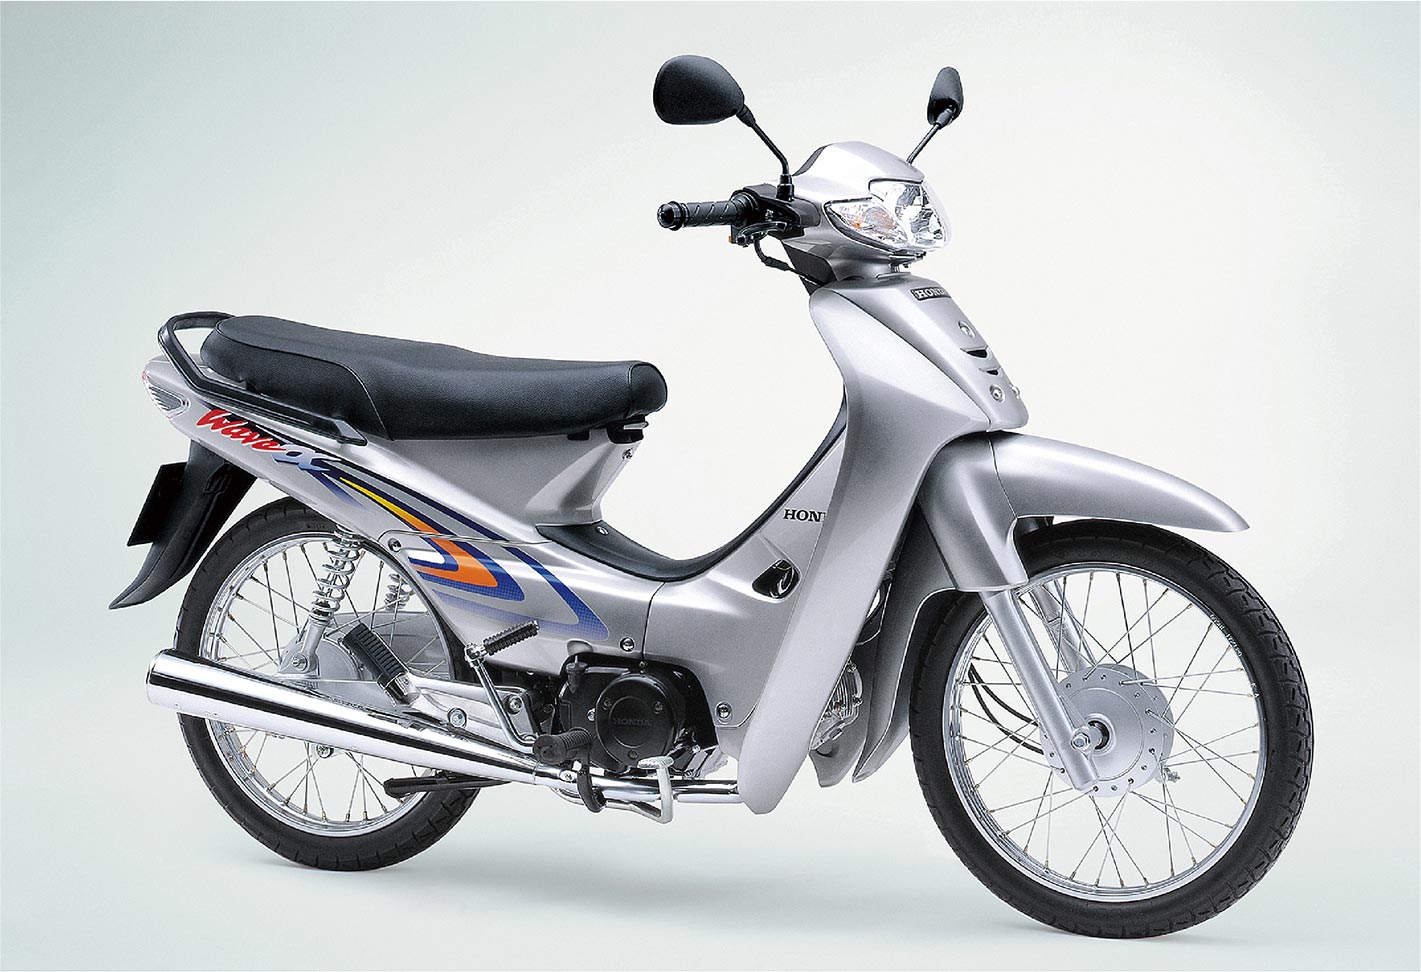 2002年、ベトナムのユーザーニーズに合致したデザインの二輪車Wave αの生産を開始